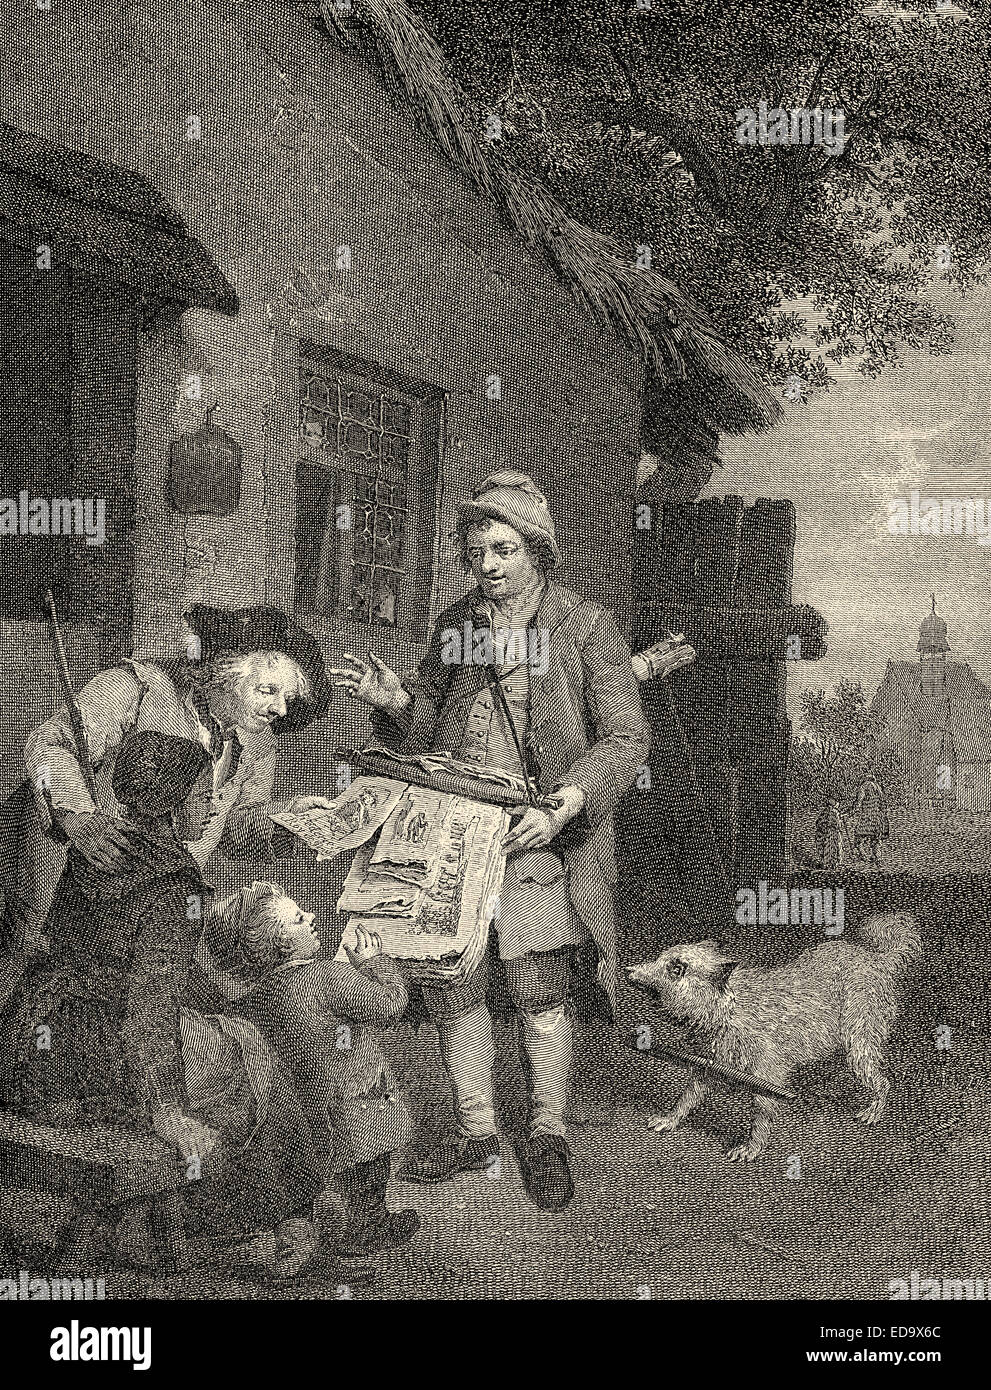 Un immagine francese il concessionario dal XVIII secolo, ein französischer Bilderhändler im 18. Jahrhundert Foto Stock